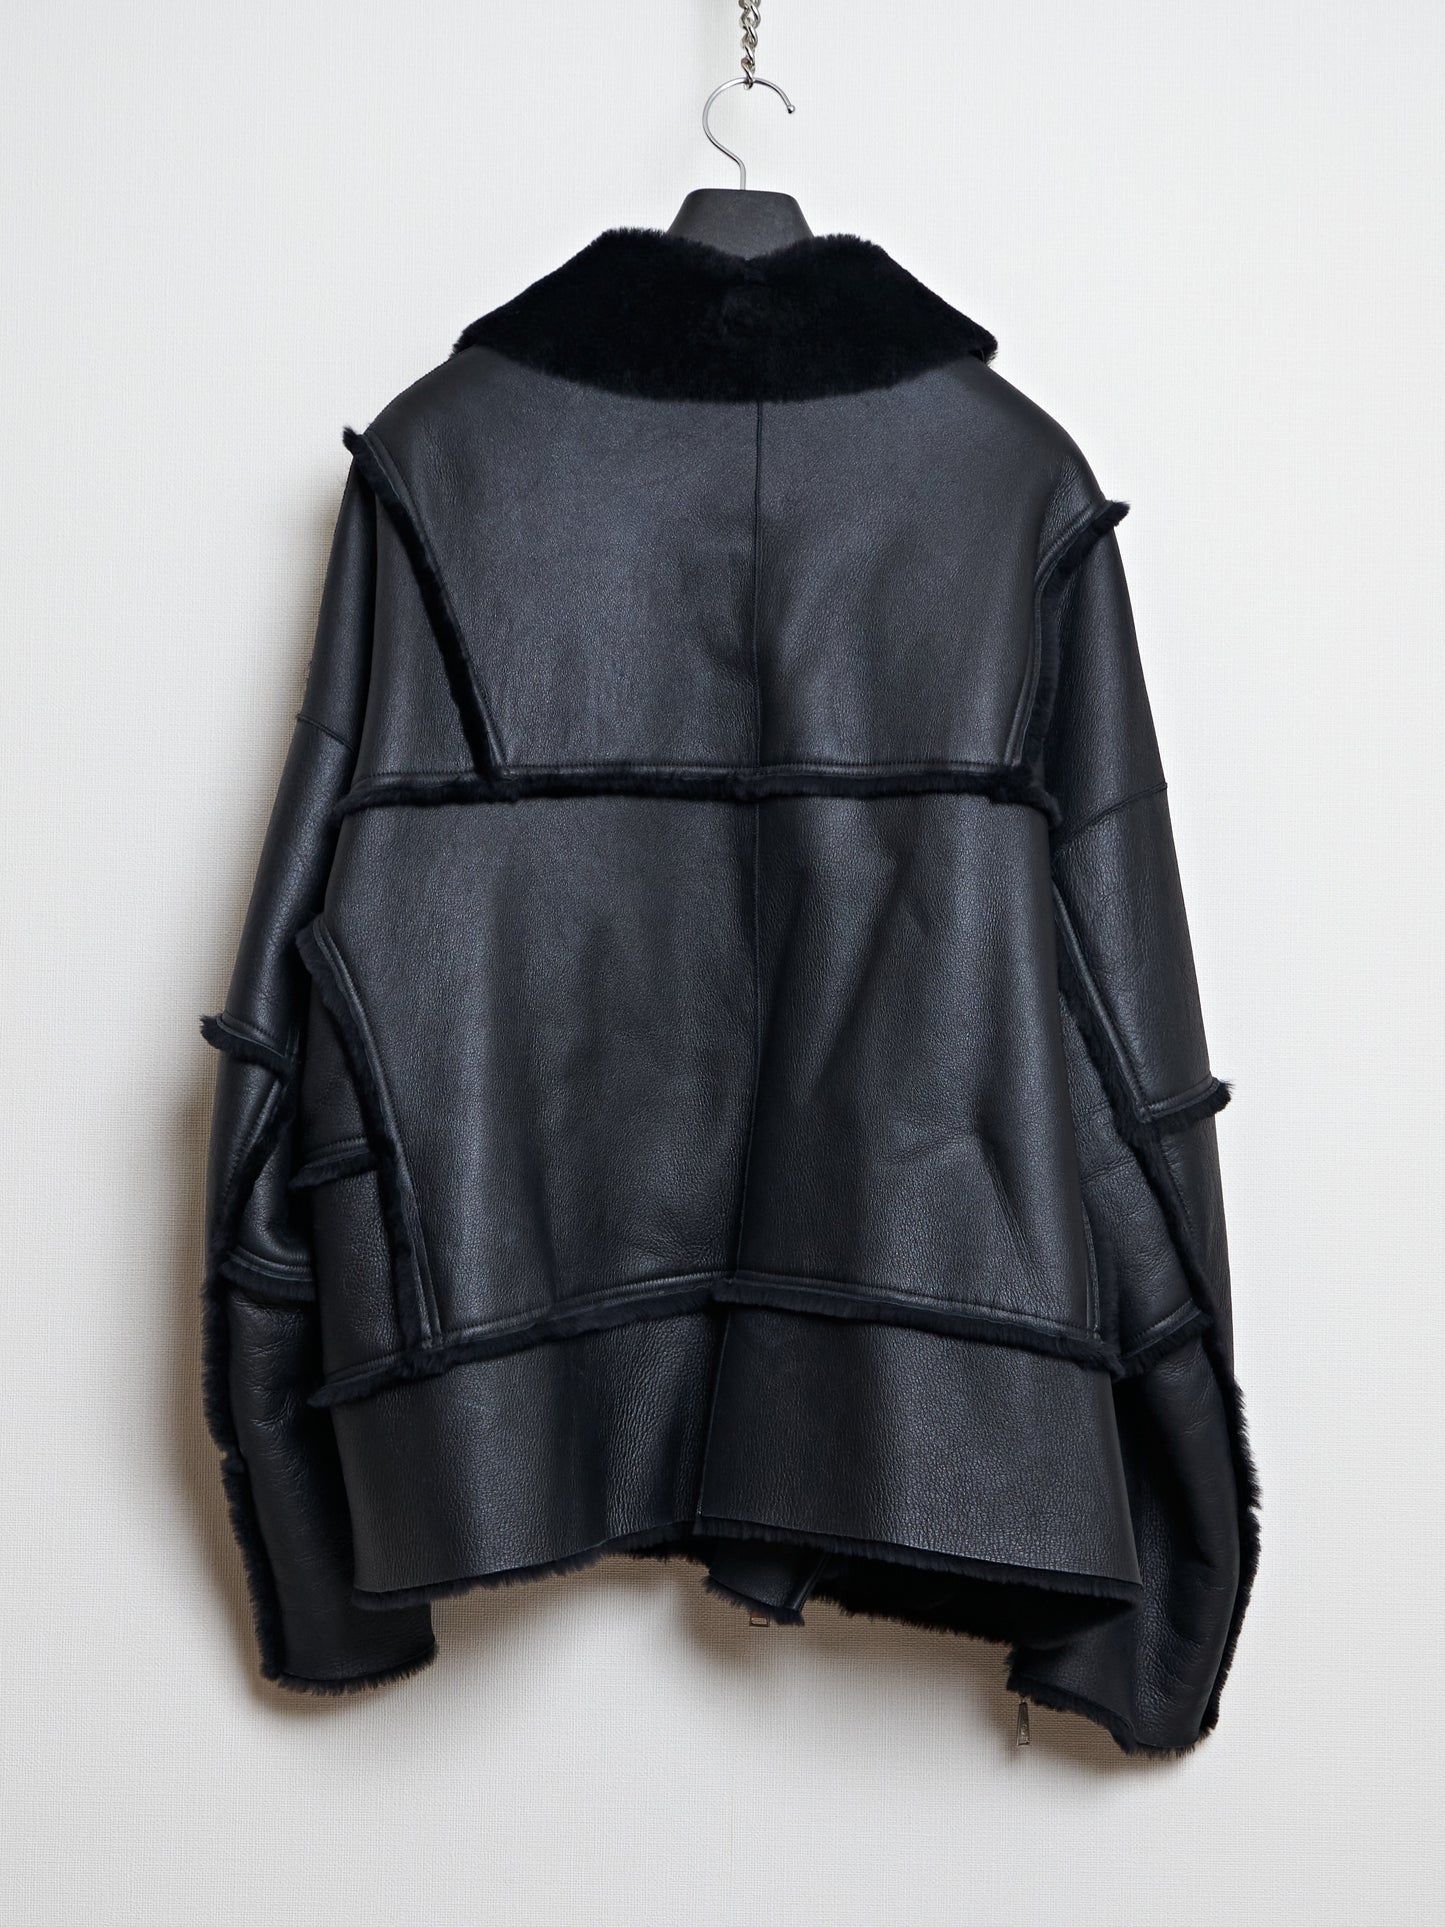 【SAMPLE】Fur Riders Jacket / BLACK